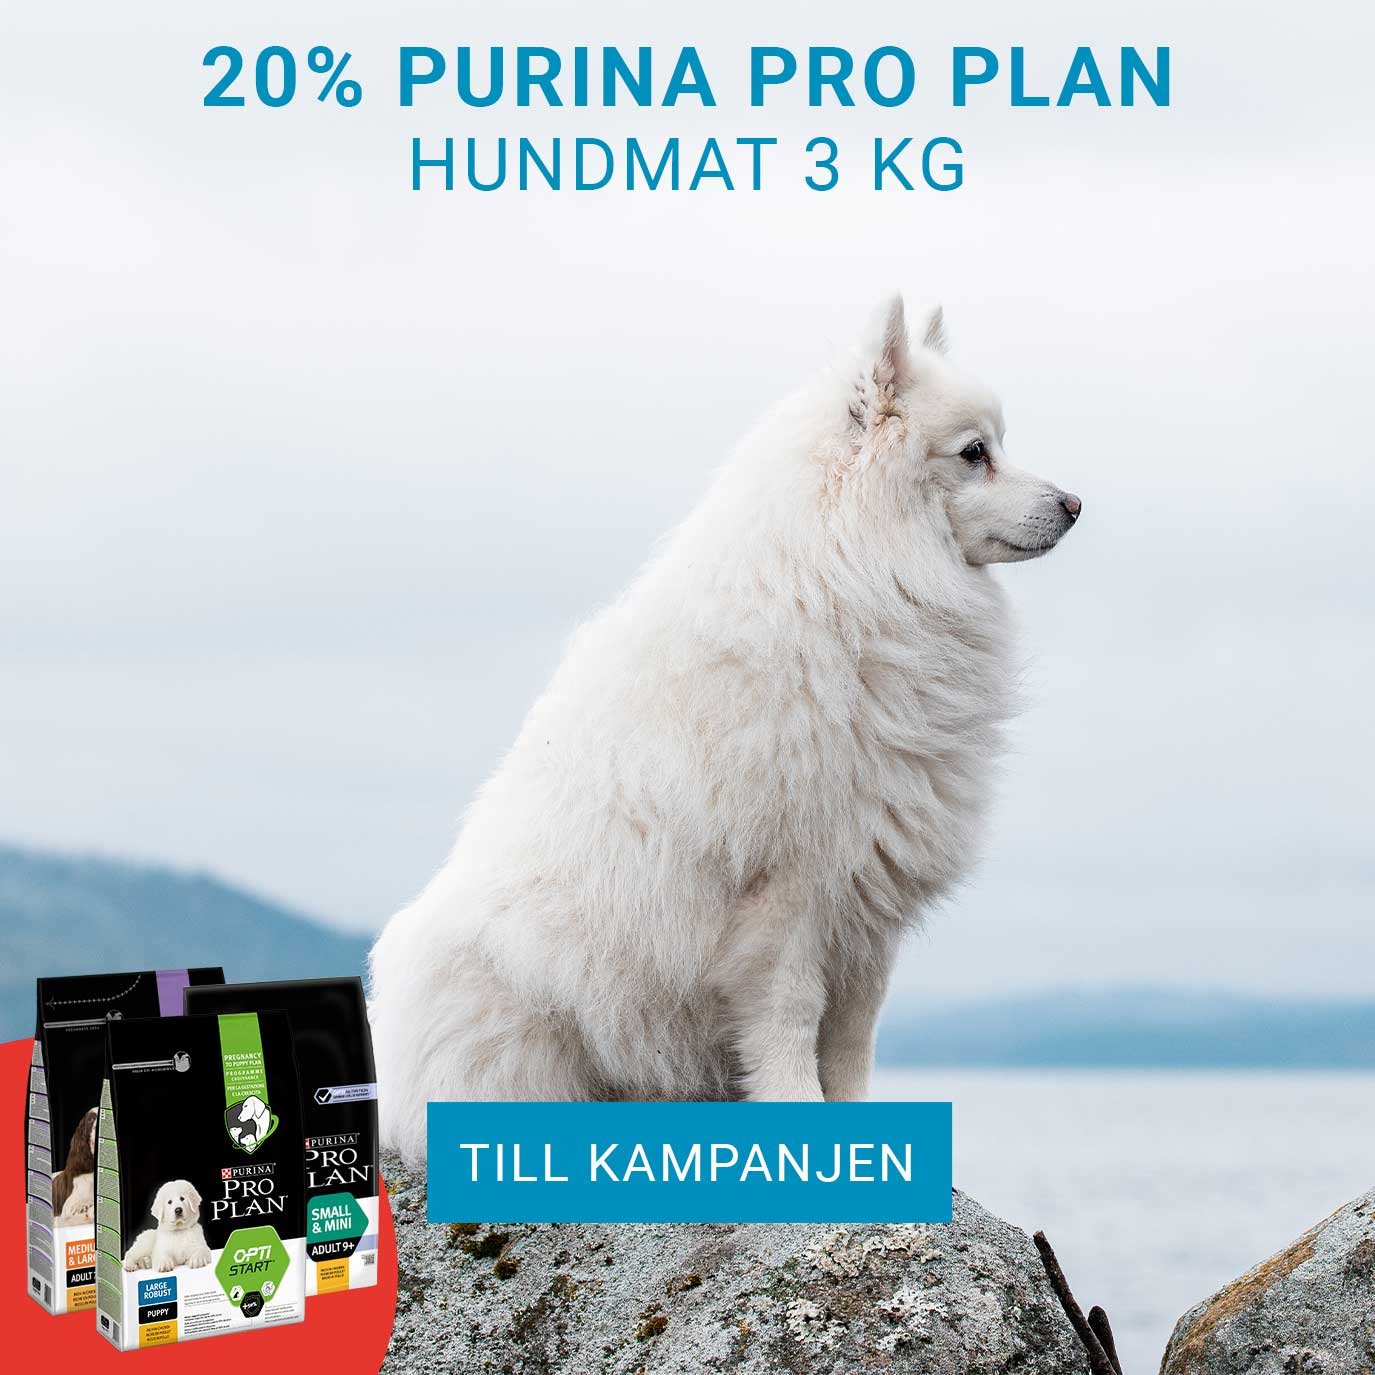 Kampanj 20% Purina pro plan hund